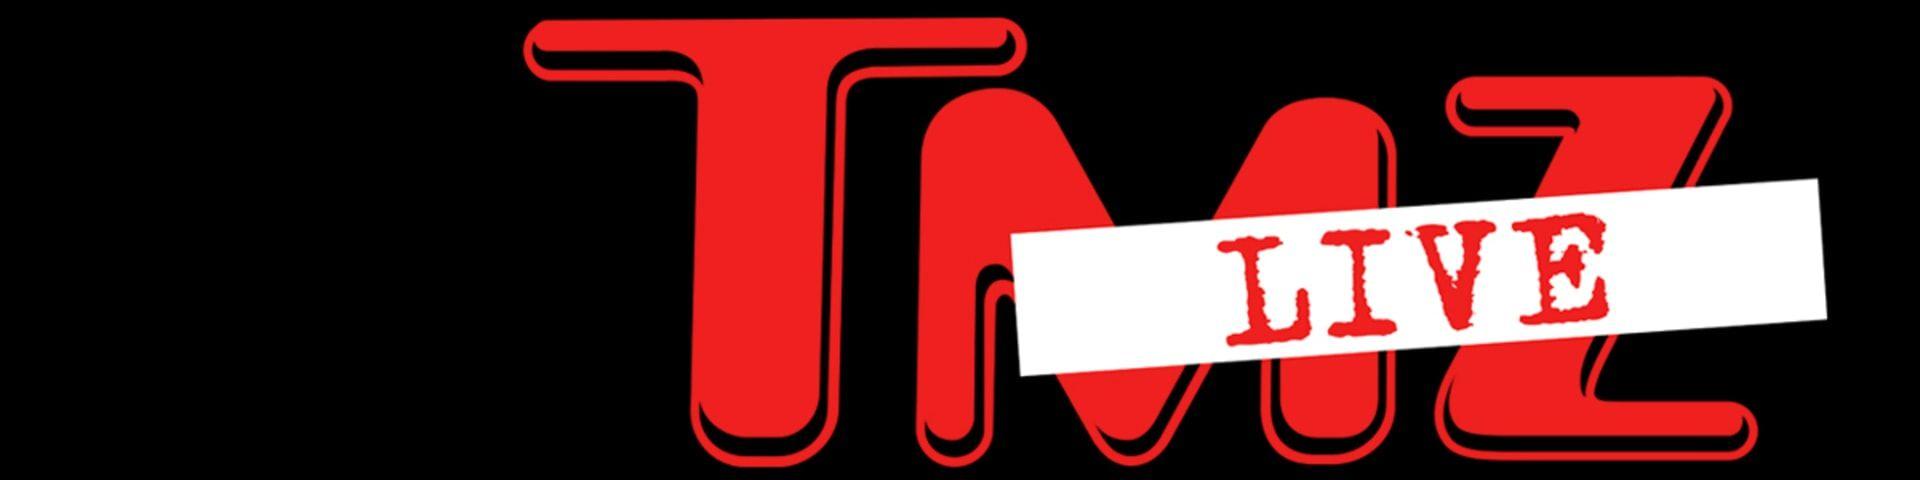 TMZ Logo - WarnerBros.com